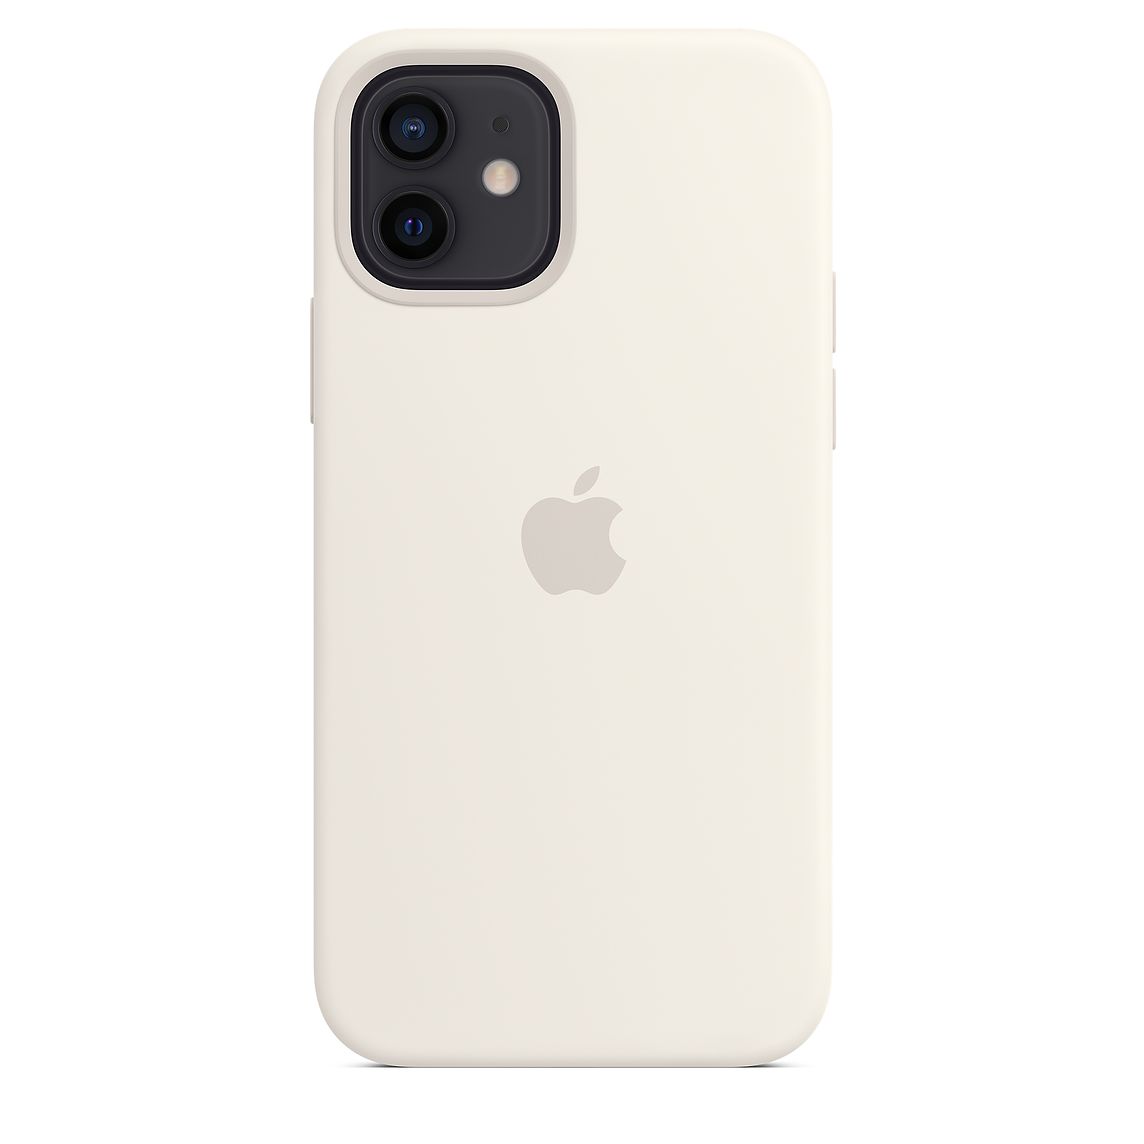 Фото — Чехол для смартфона Apple MagSafe для iPhone 12/12 Pro, cиликон, белый